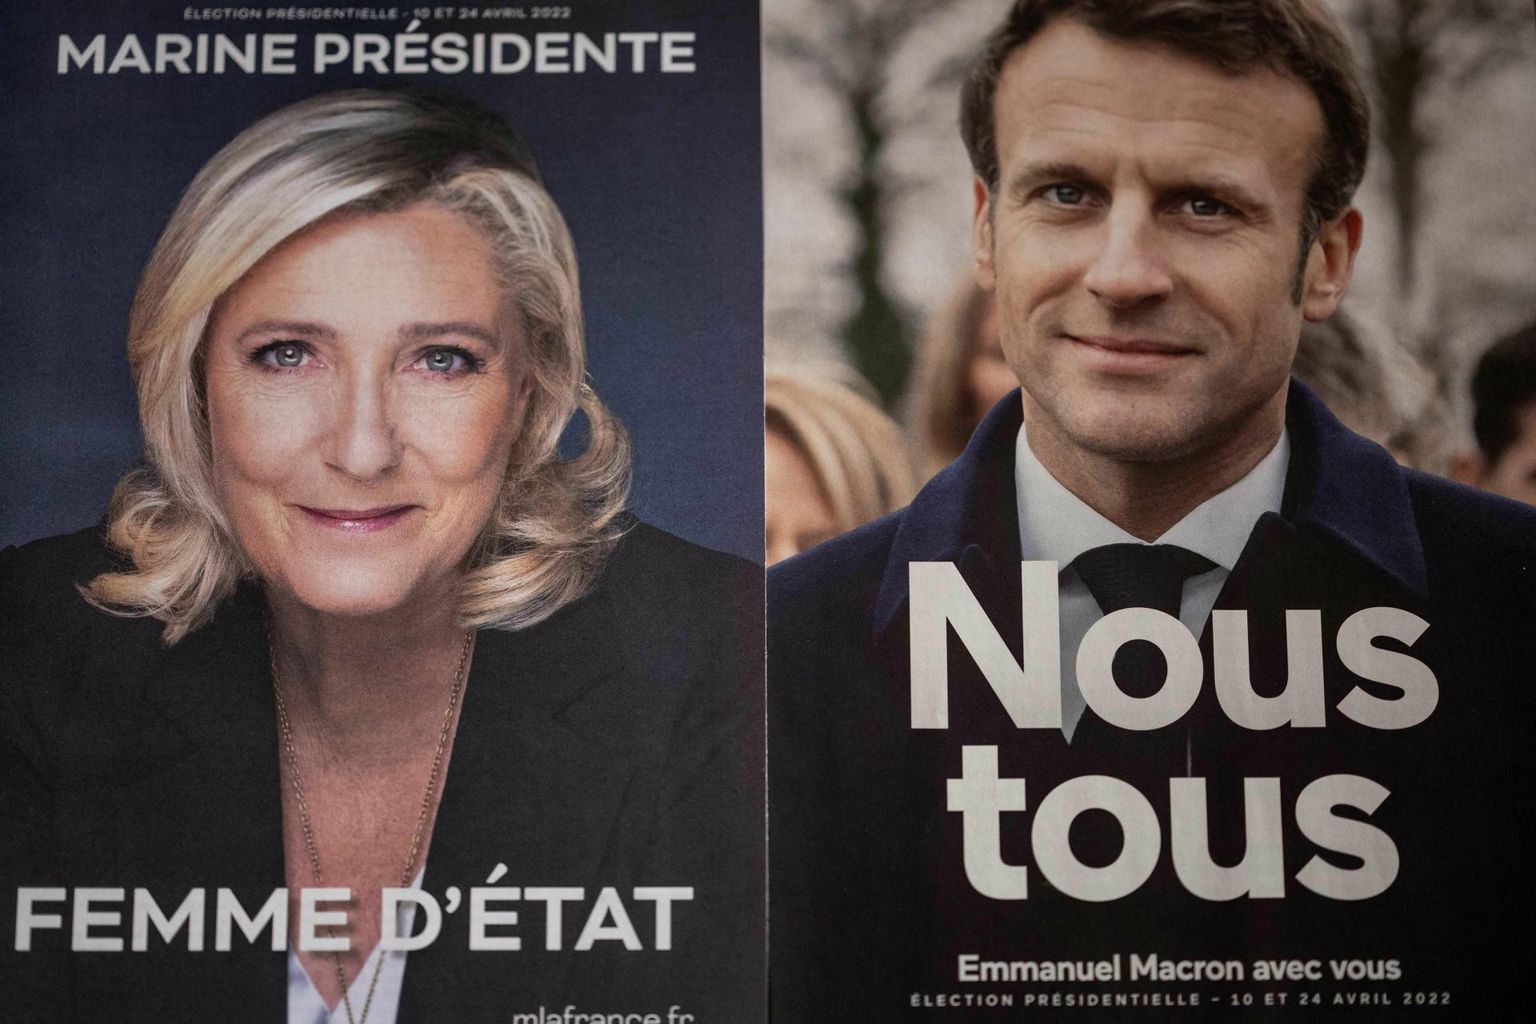 Marine Le Peni ja Emmanuel Macroni valimisplakatid Pariisis.